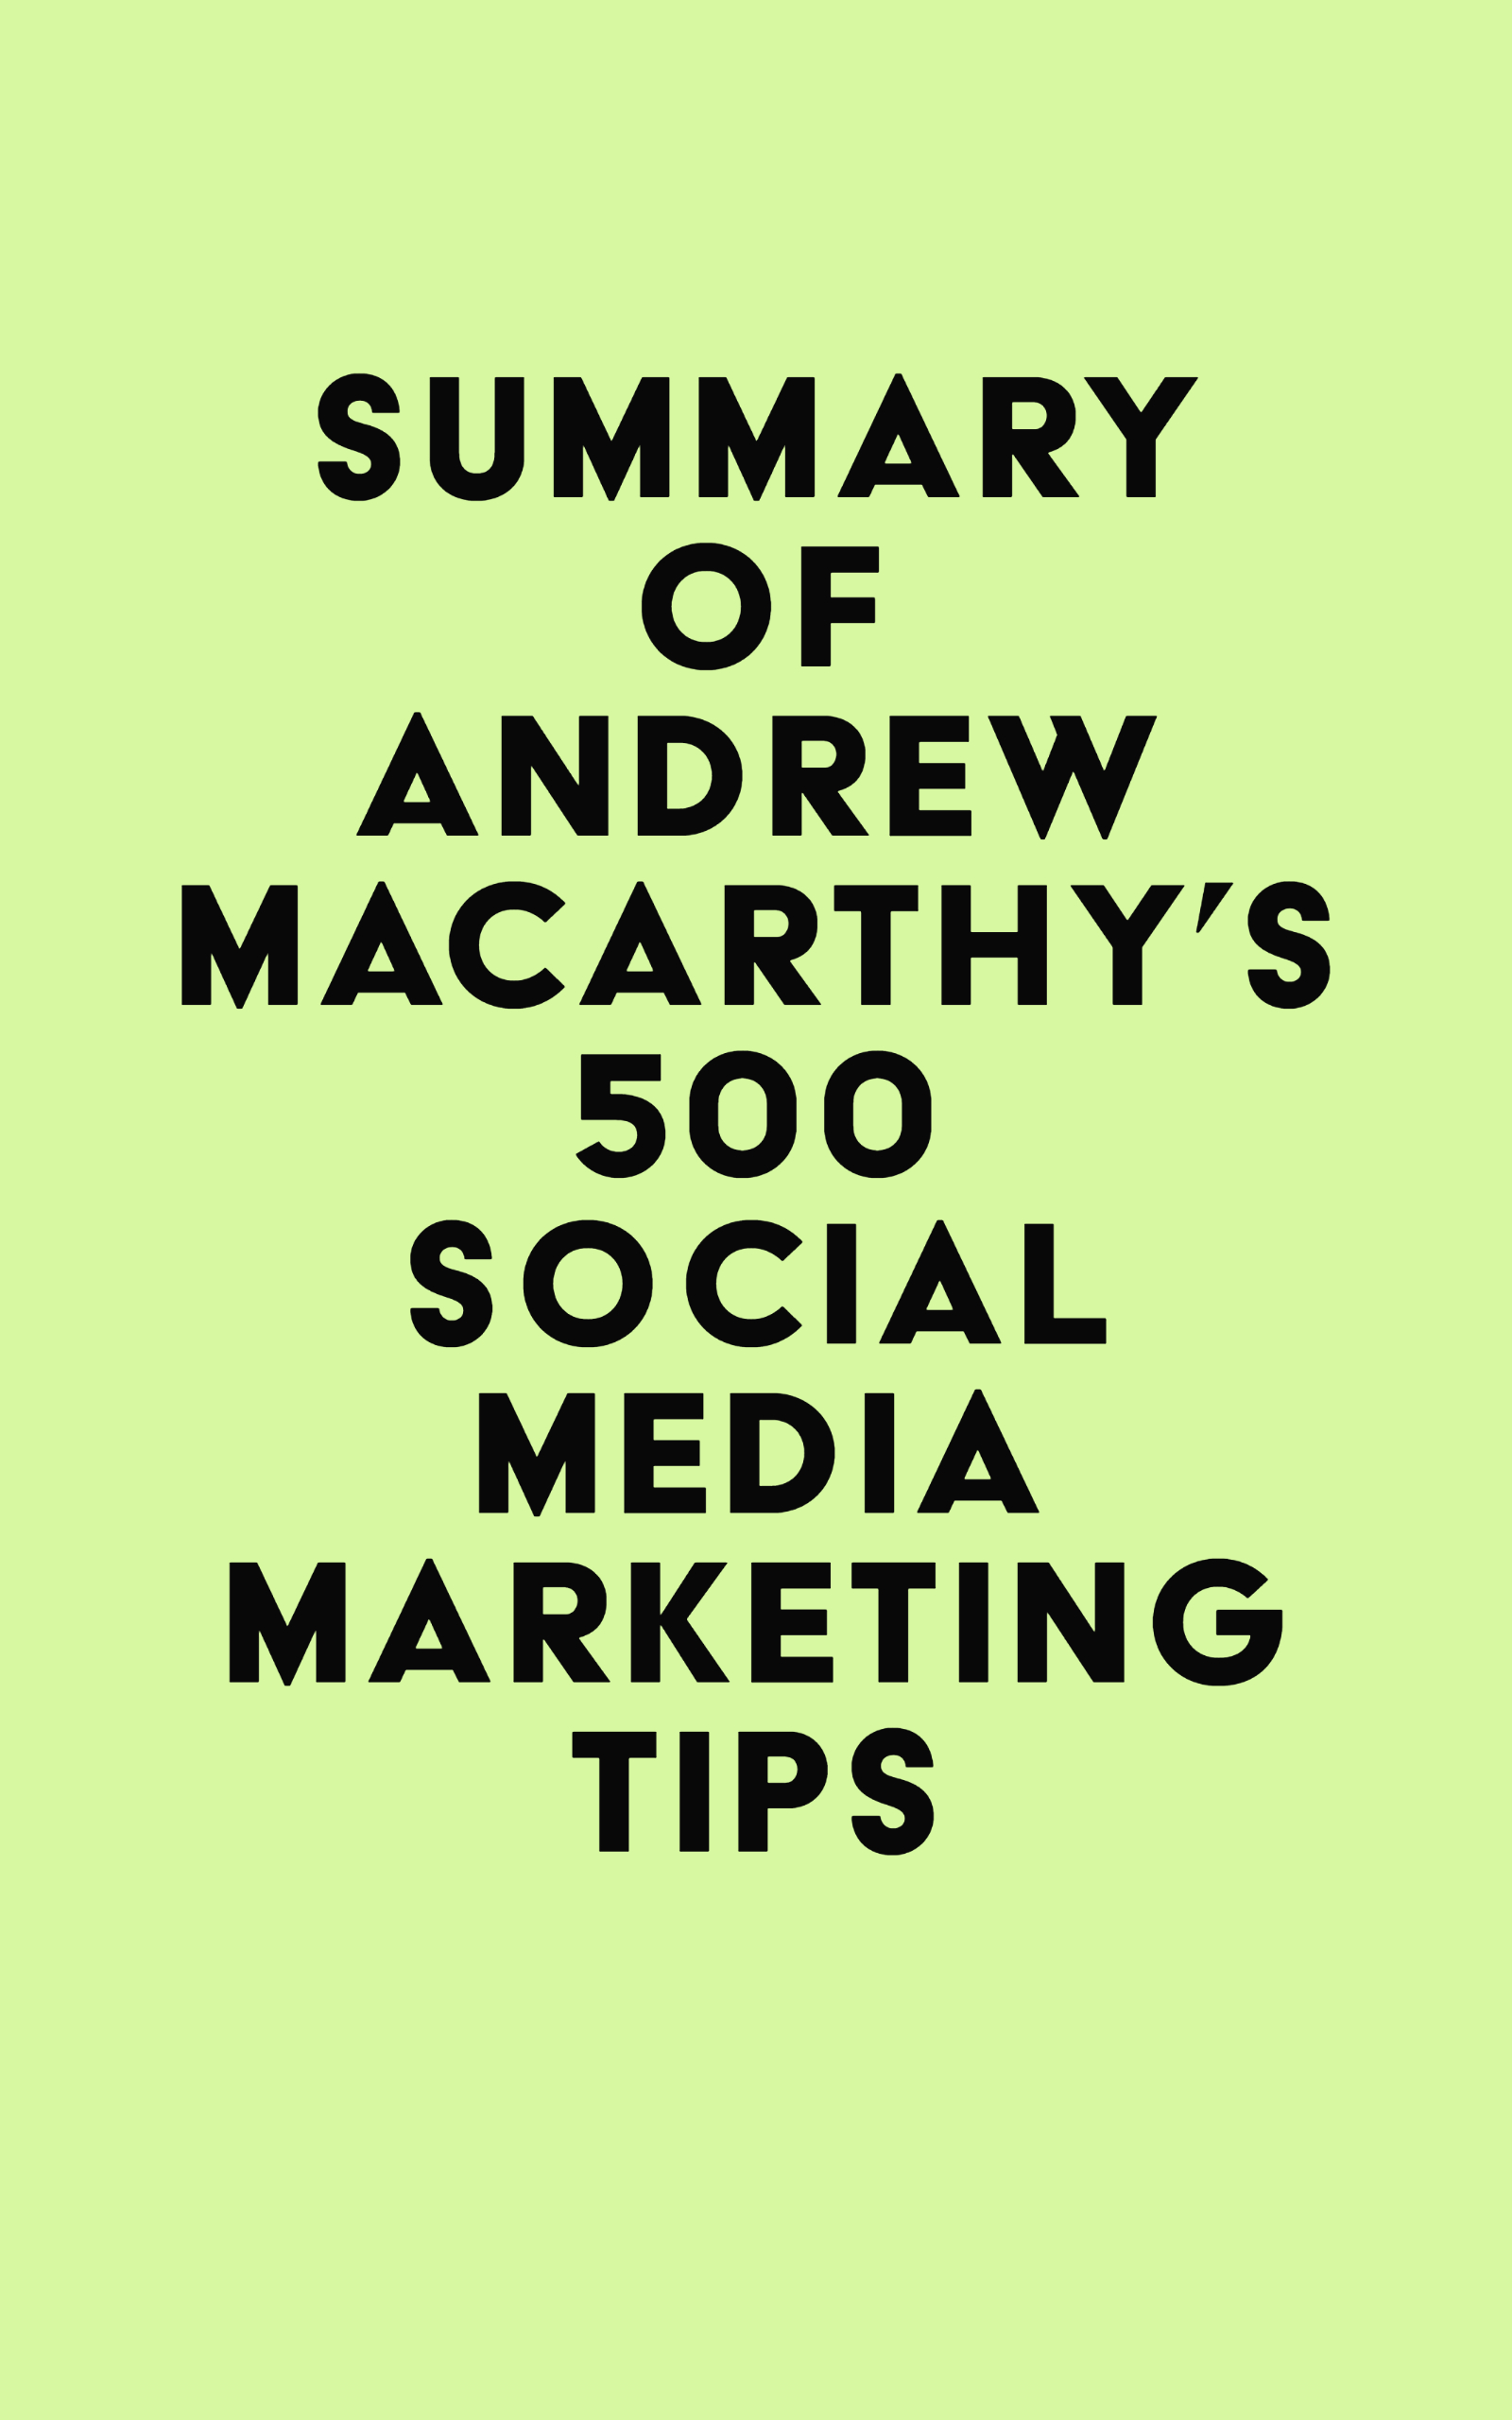 Summary of Andrew Macarthy's 500 Social Media Marketing Tips